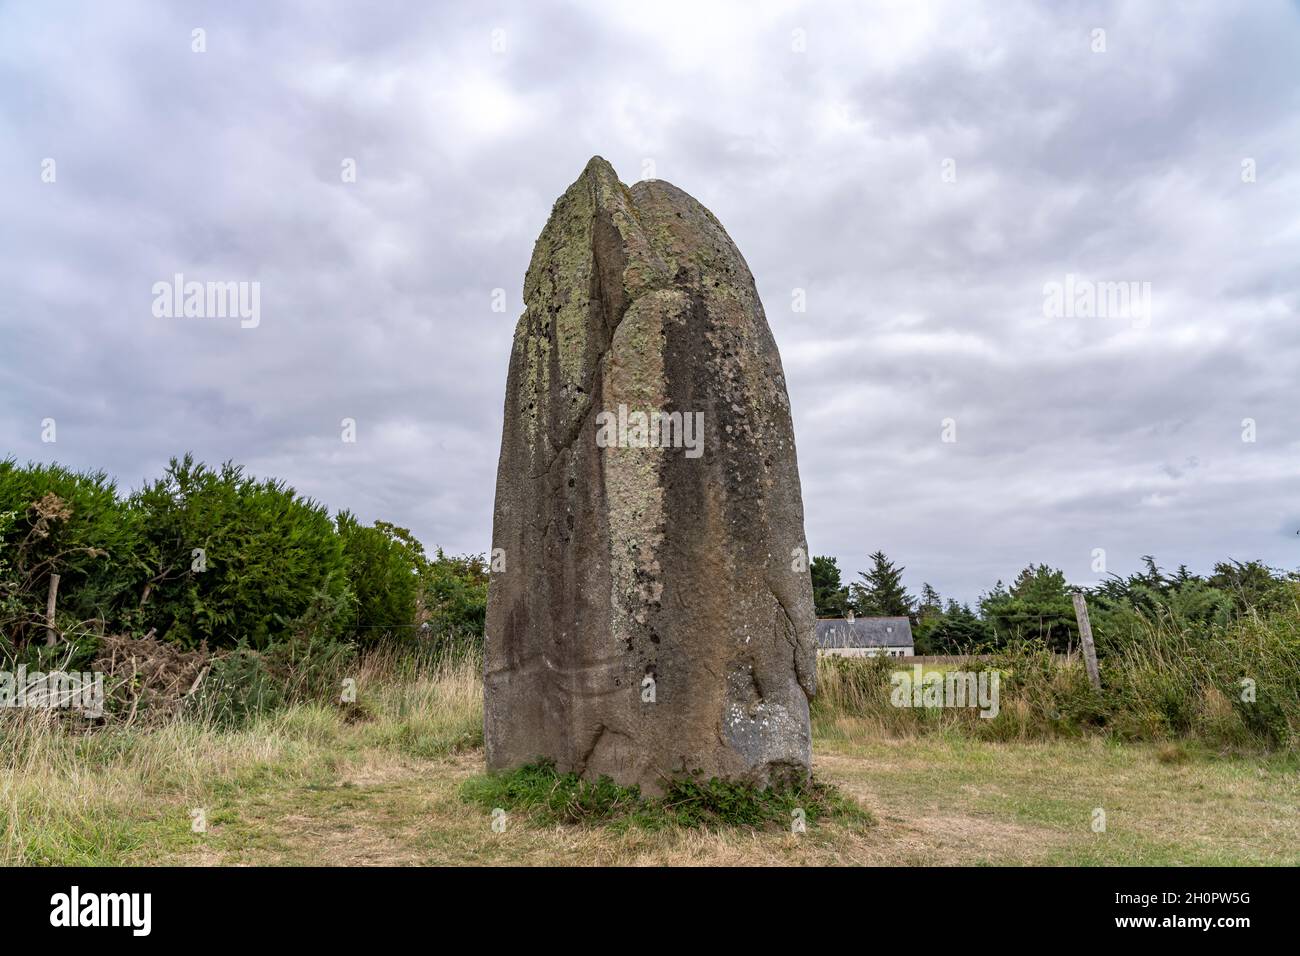 Menhir von Kermaillard bei Sarzeau, Bretagne, Frankreich | Kermaillard Menhir bei Sarzeau, Bretagne, Frankreich Stockfoto